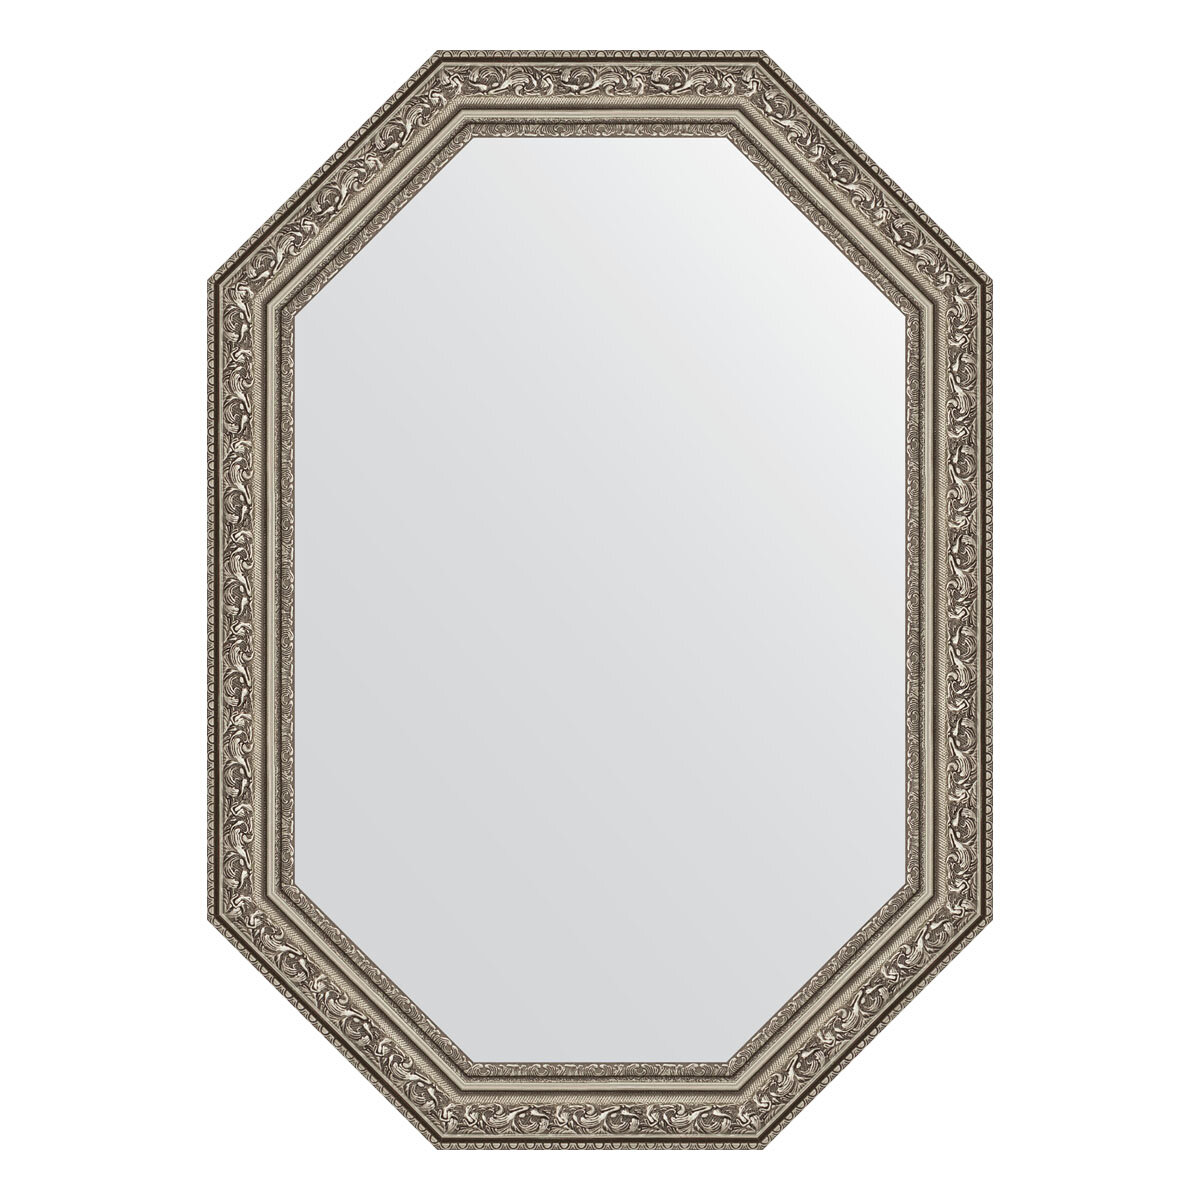 Зеркало настенное Polygon EVOFORM в багетной раме виньетка состаренное серебро, 50х70 см, для гостиной, прихожей, спальни и ванной комнаты, BY 7025